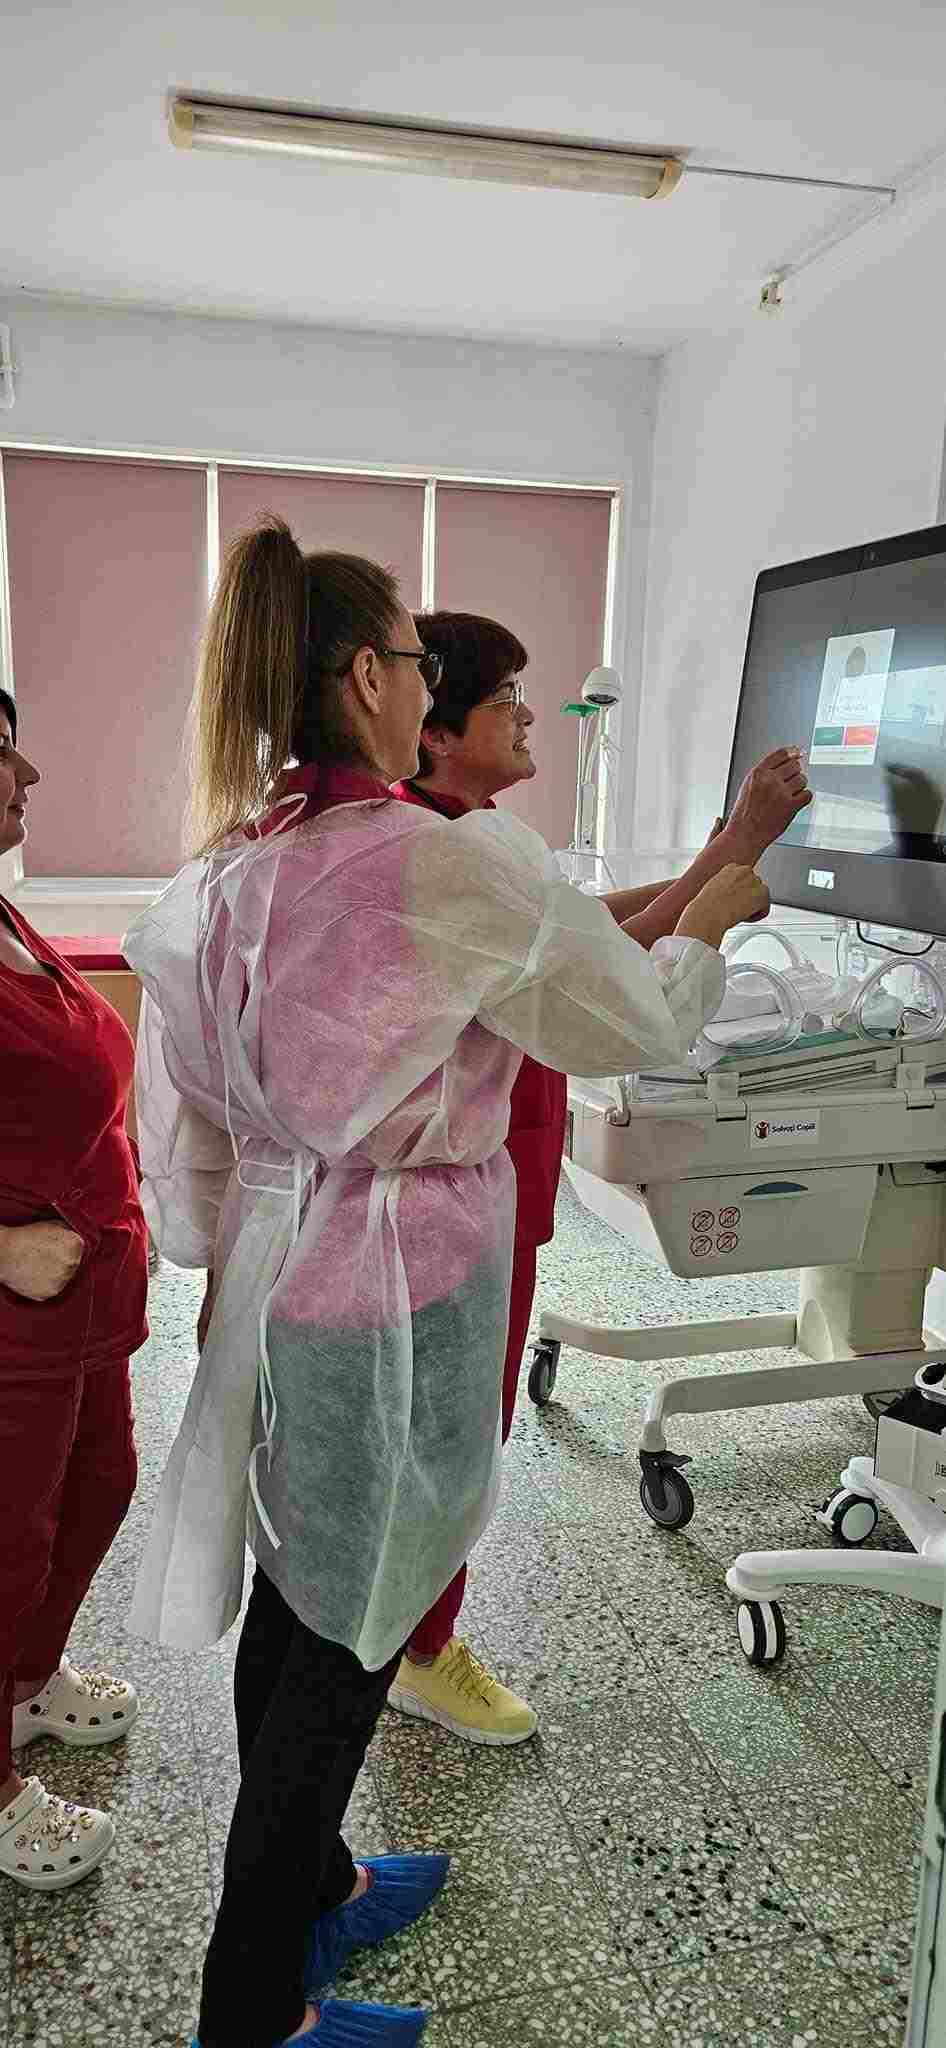  Secția de terapie intensivă neonatală a fost conectată de Fundația Vodafone România și Asociația Cristi Vasiliu la rețeaua națională de telemedicină